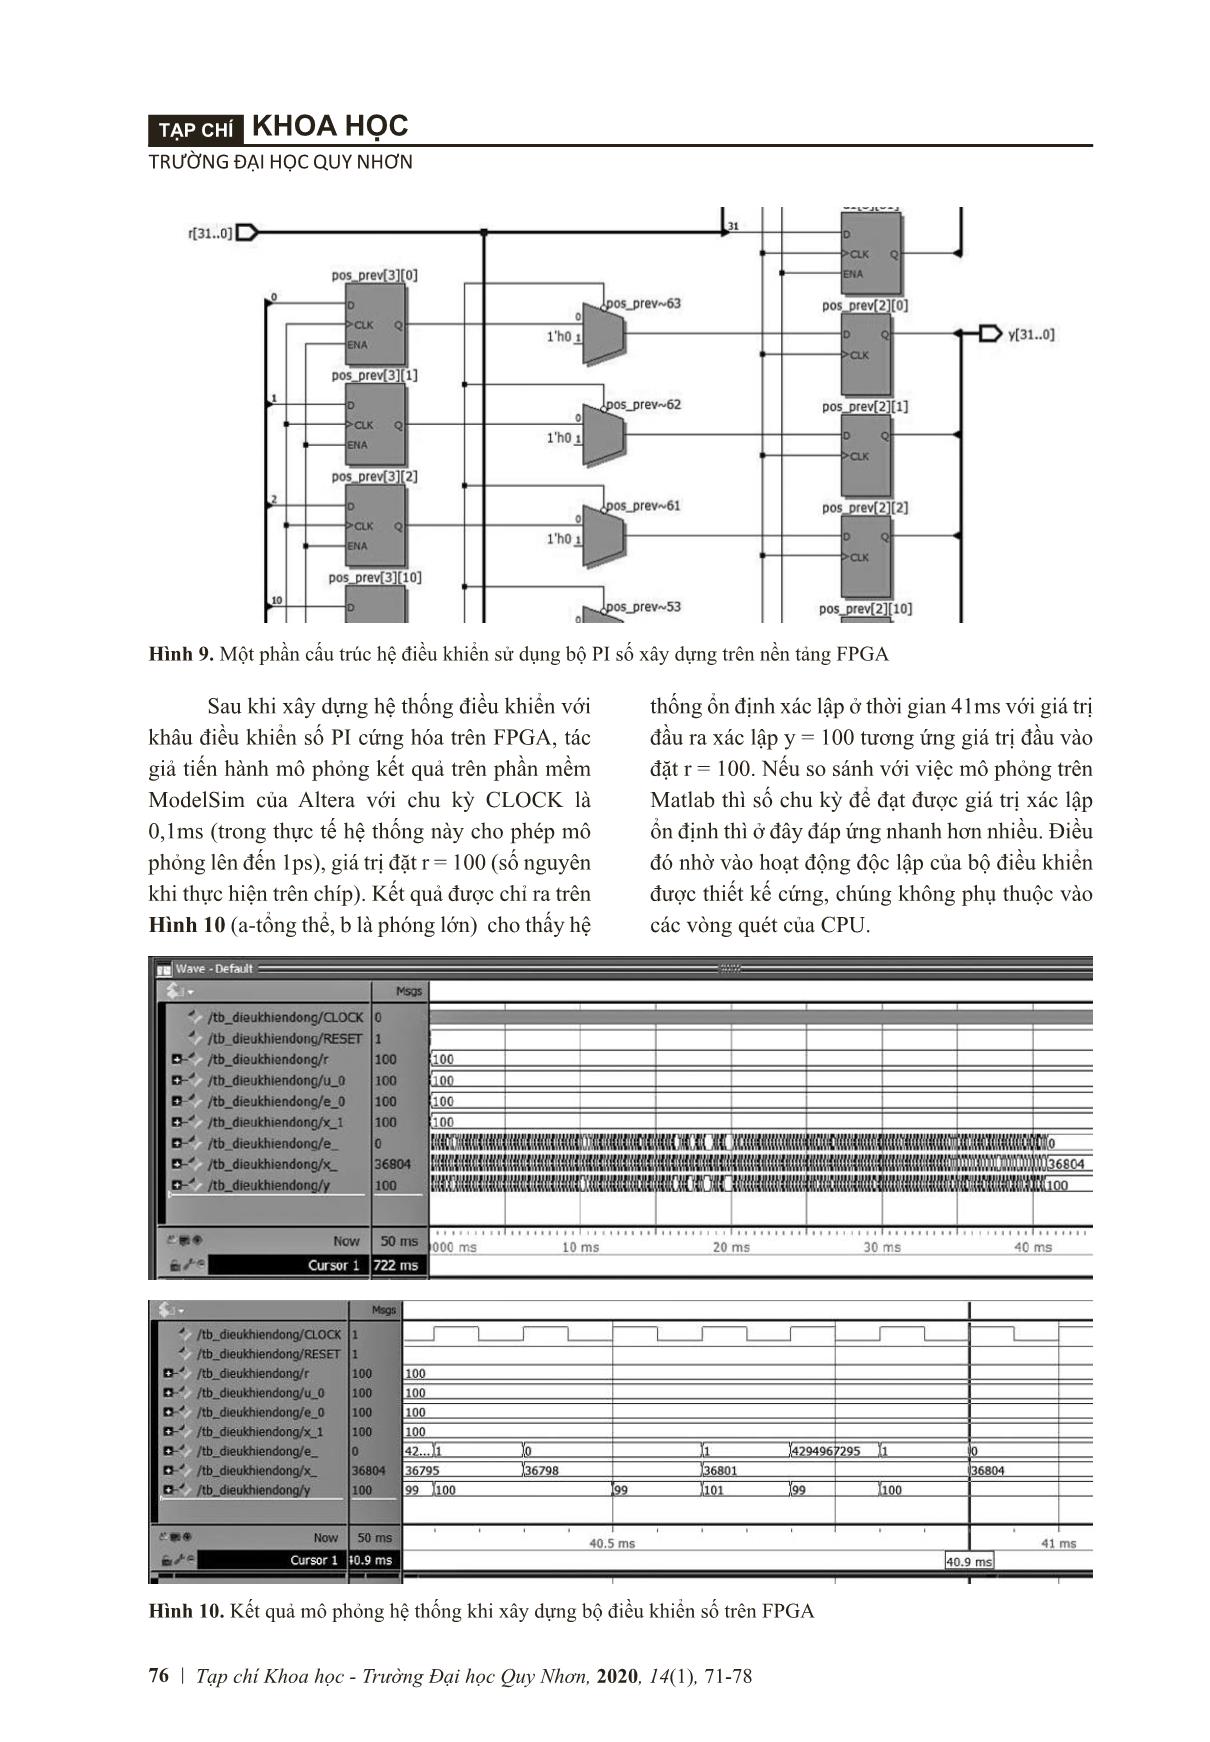 Current controller design based on FPGA trang 6